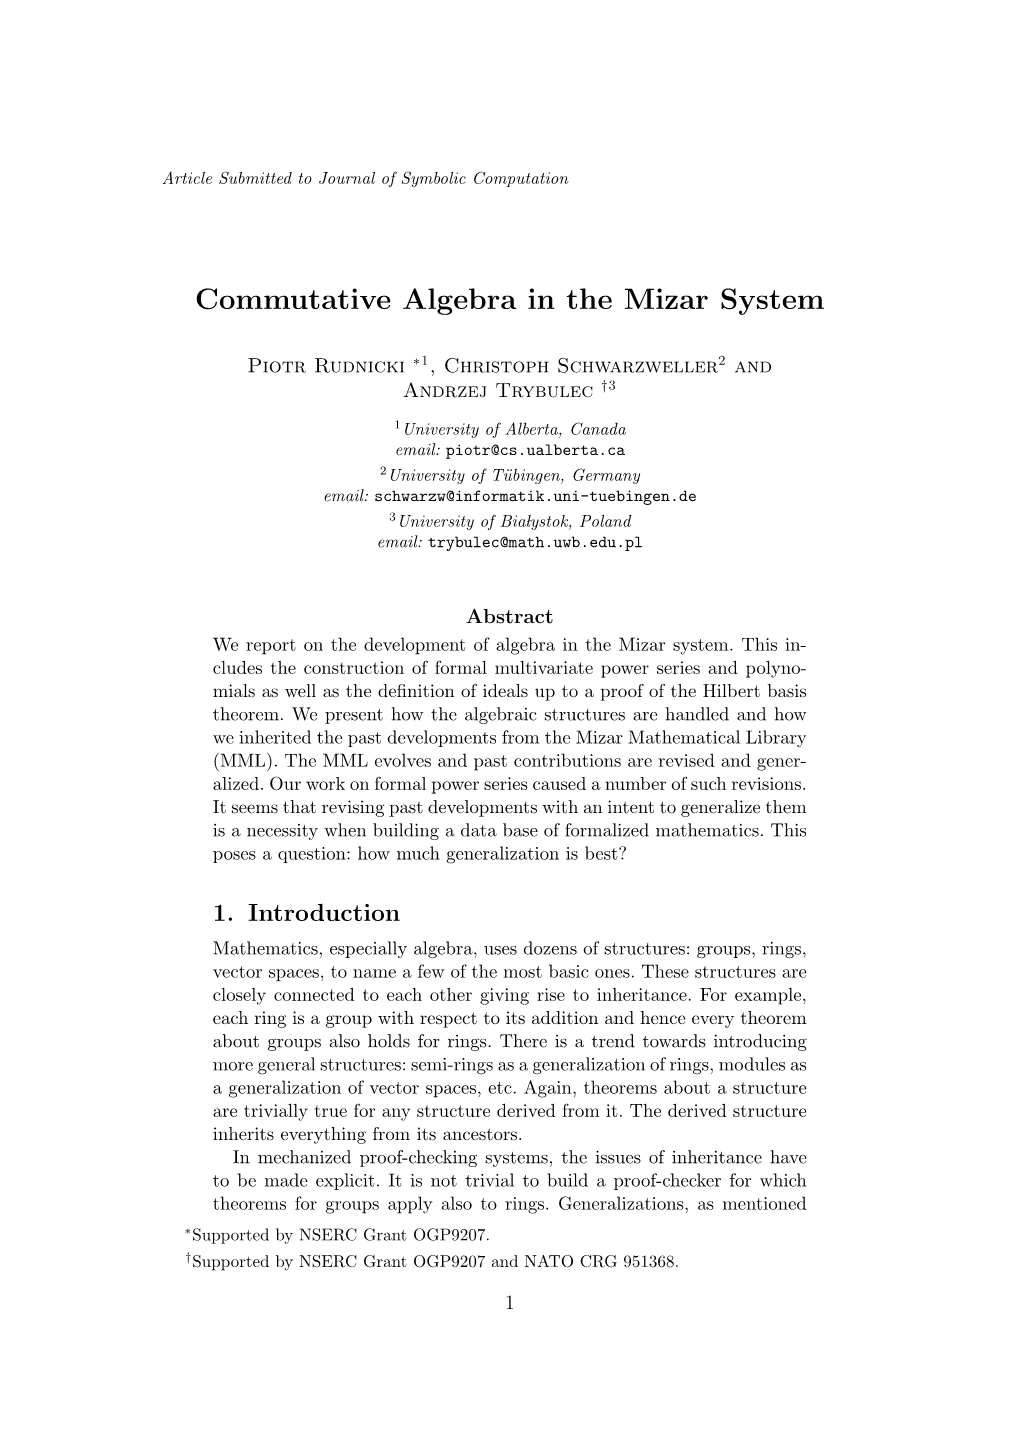 Commutative Algebra in the Mizar System